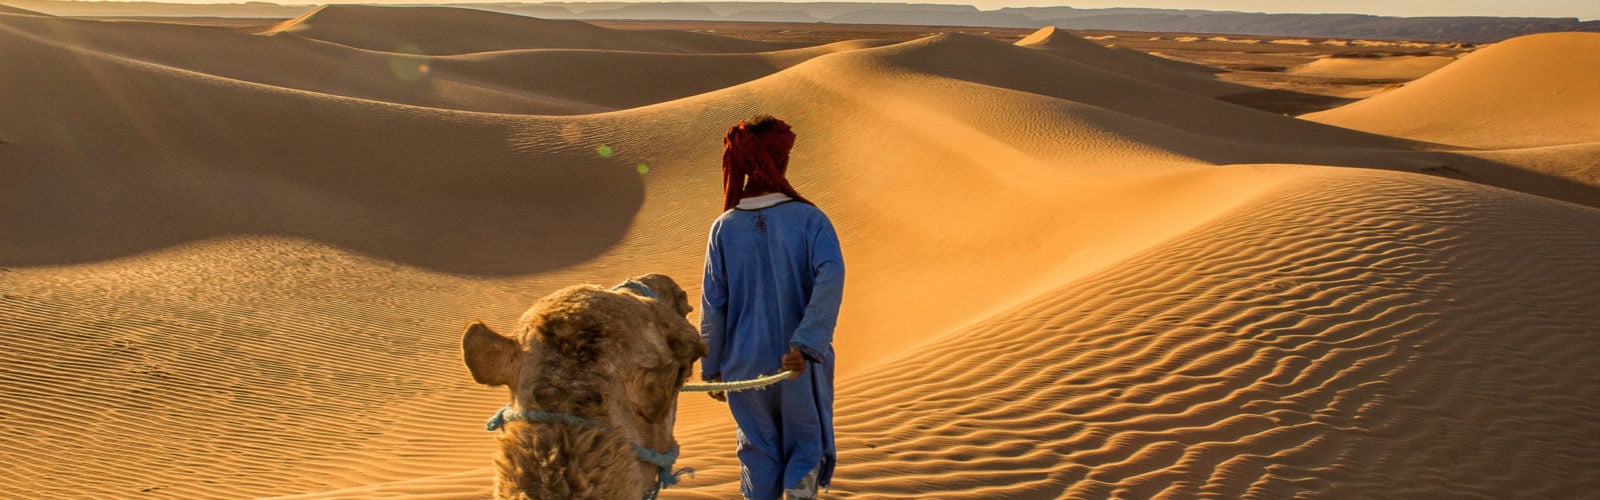 Berber walking through the dune landscape of the Sahara Desert in Morocco at golden hour